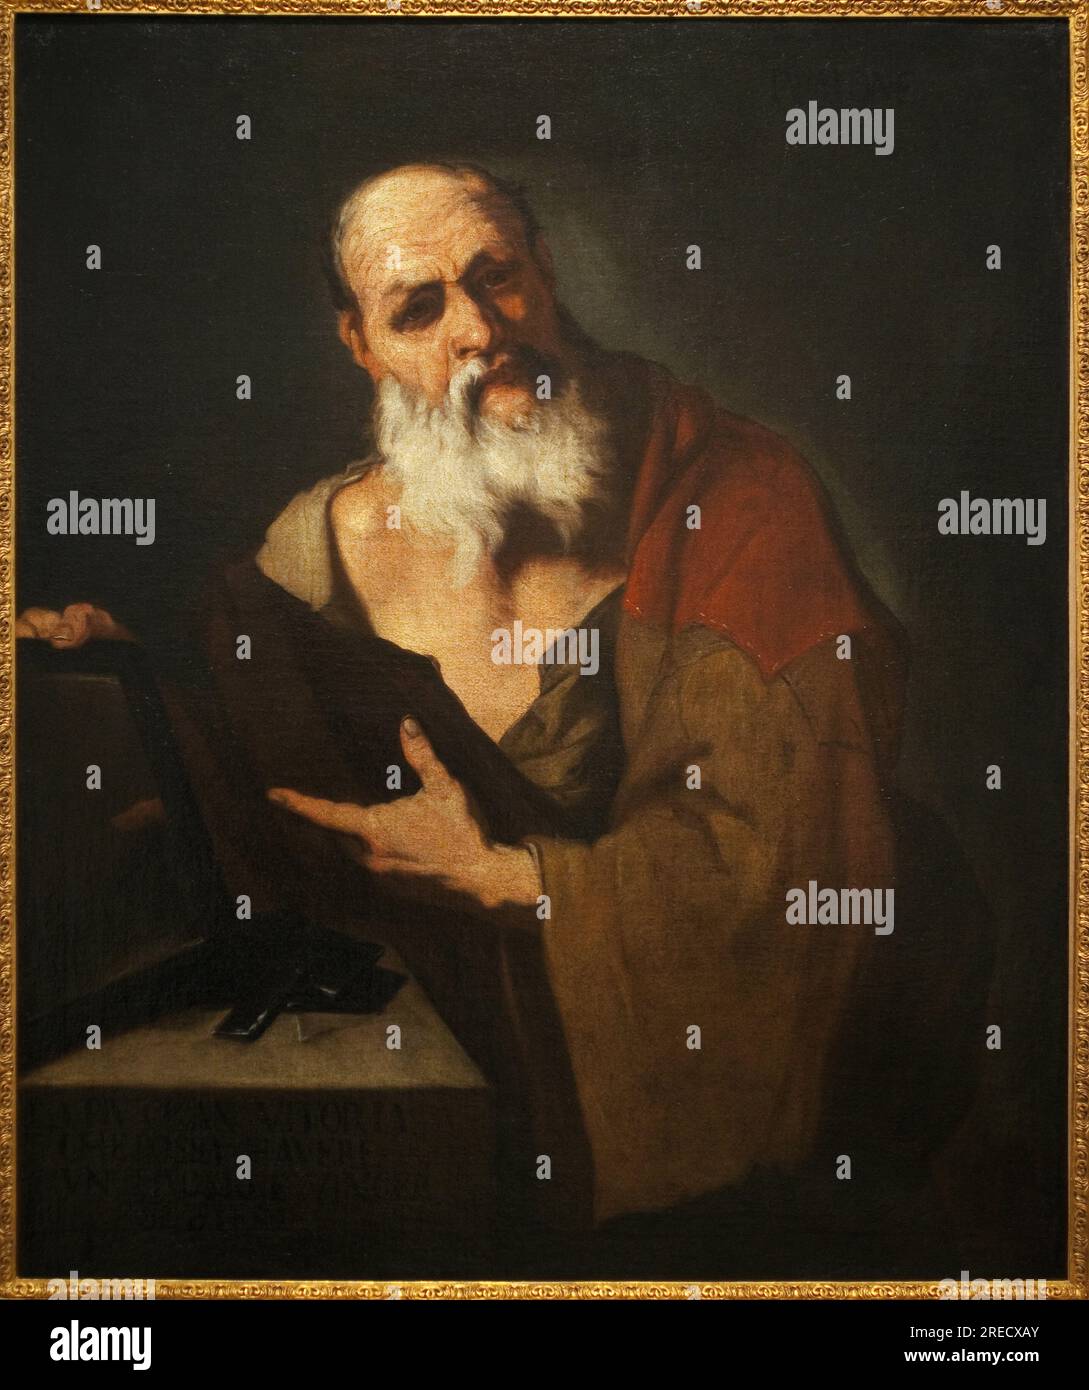 Platon (424-348 avant JC). Peinture de Luca Giordano (1634-1705), huile sur toile, 17e siecle. Musee d'art et d'histoire de Metz. Stock Photo